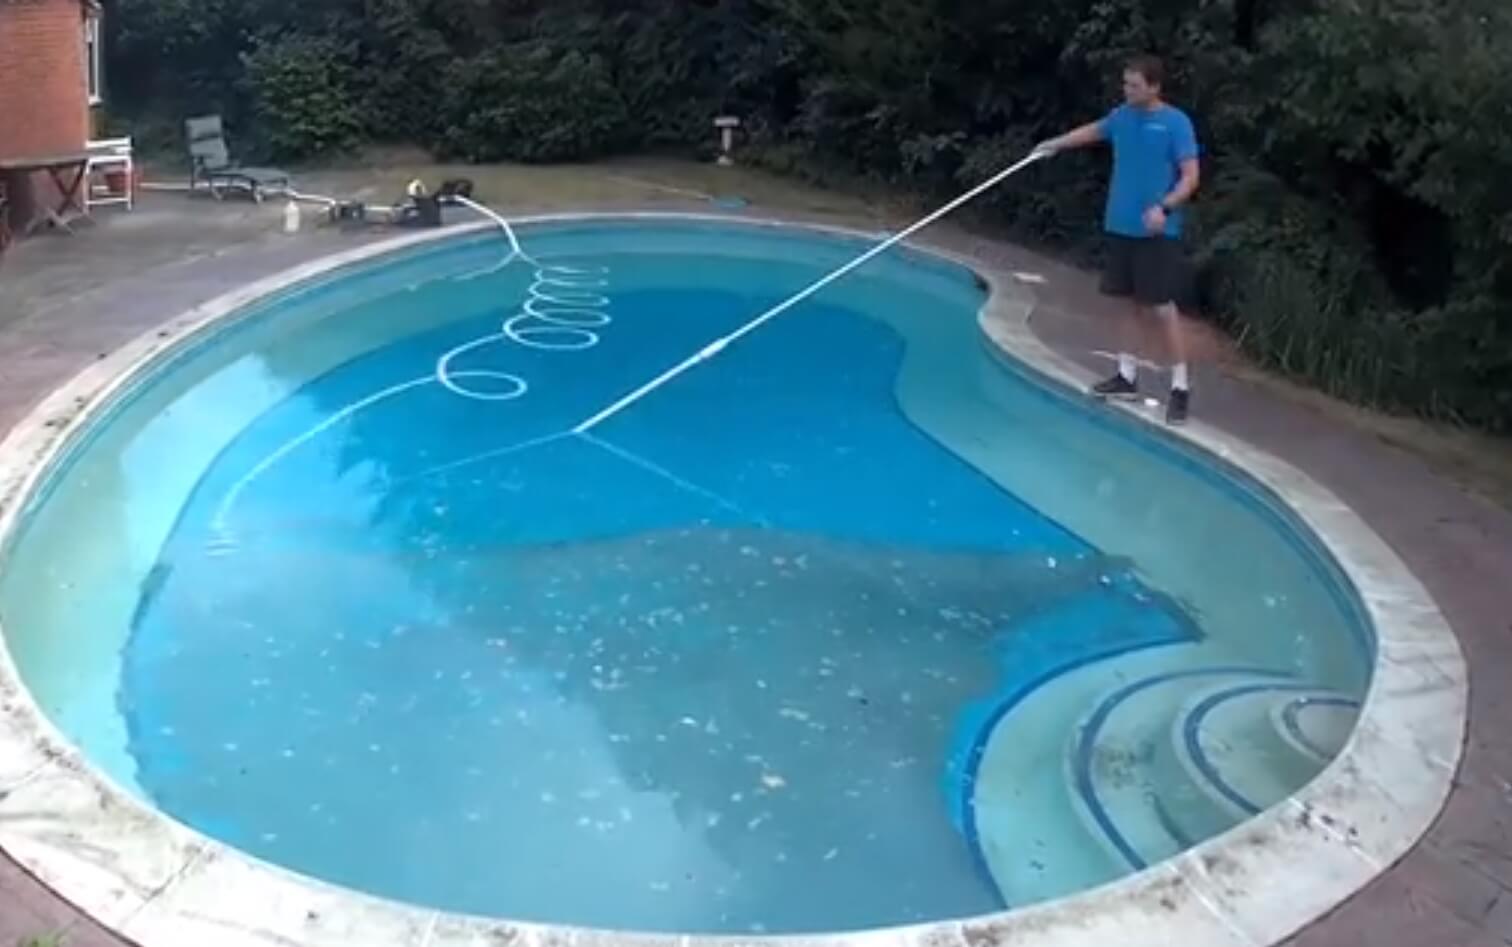 Milioni pregleda – evo kako je ovaj čistač bazena postao veoma popularan na društvenim mrežama